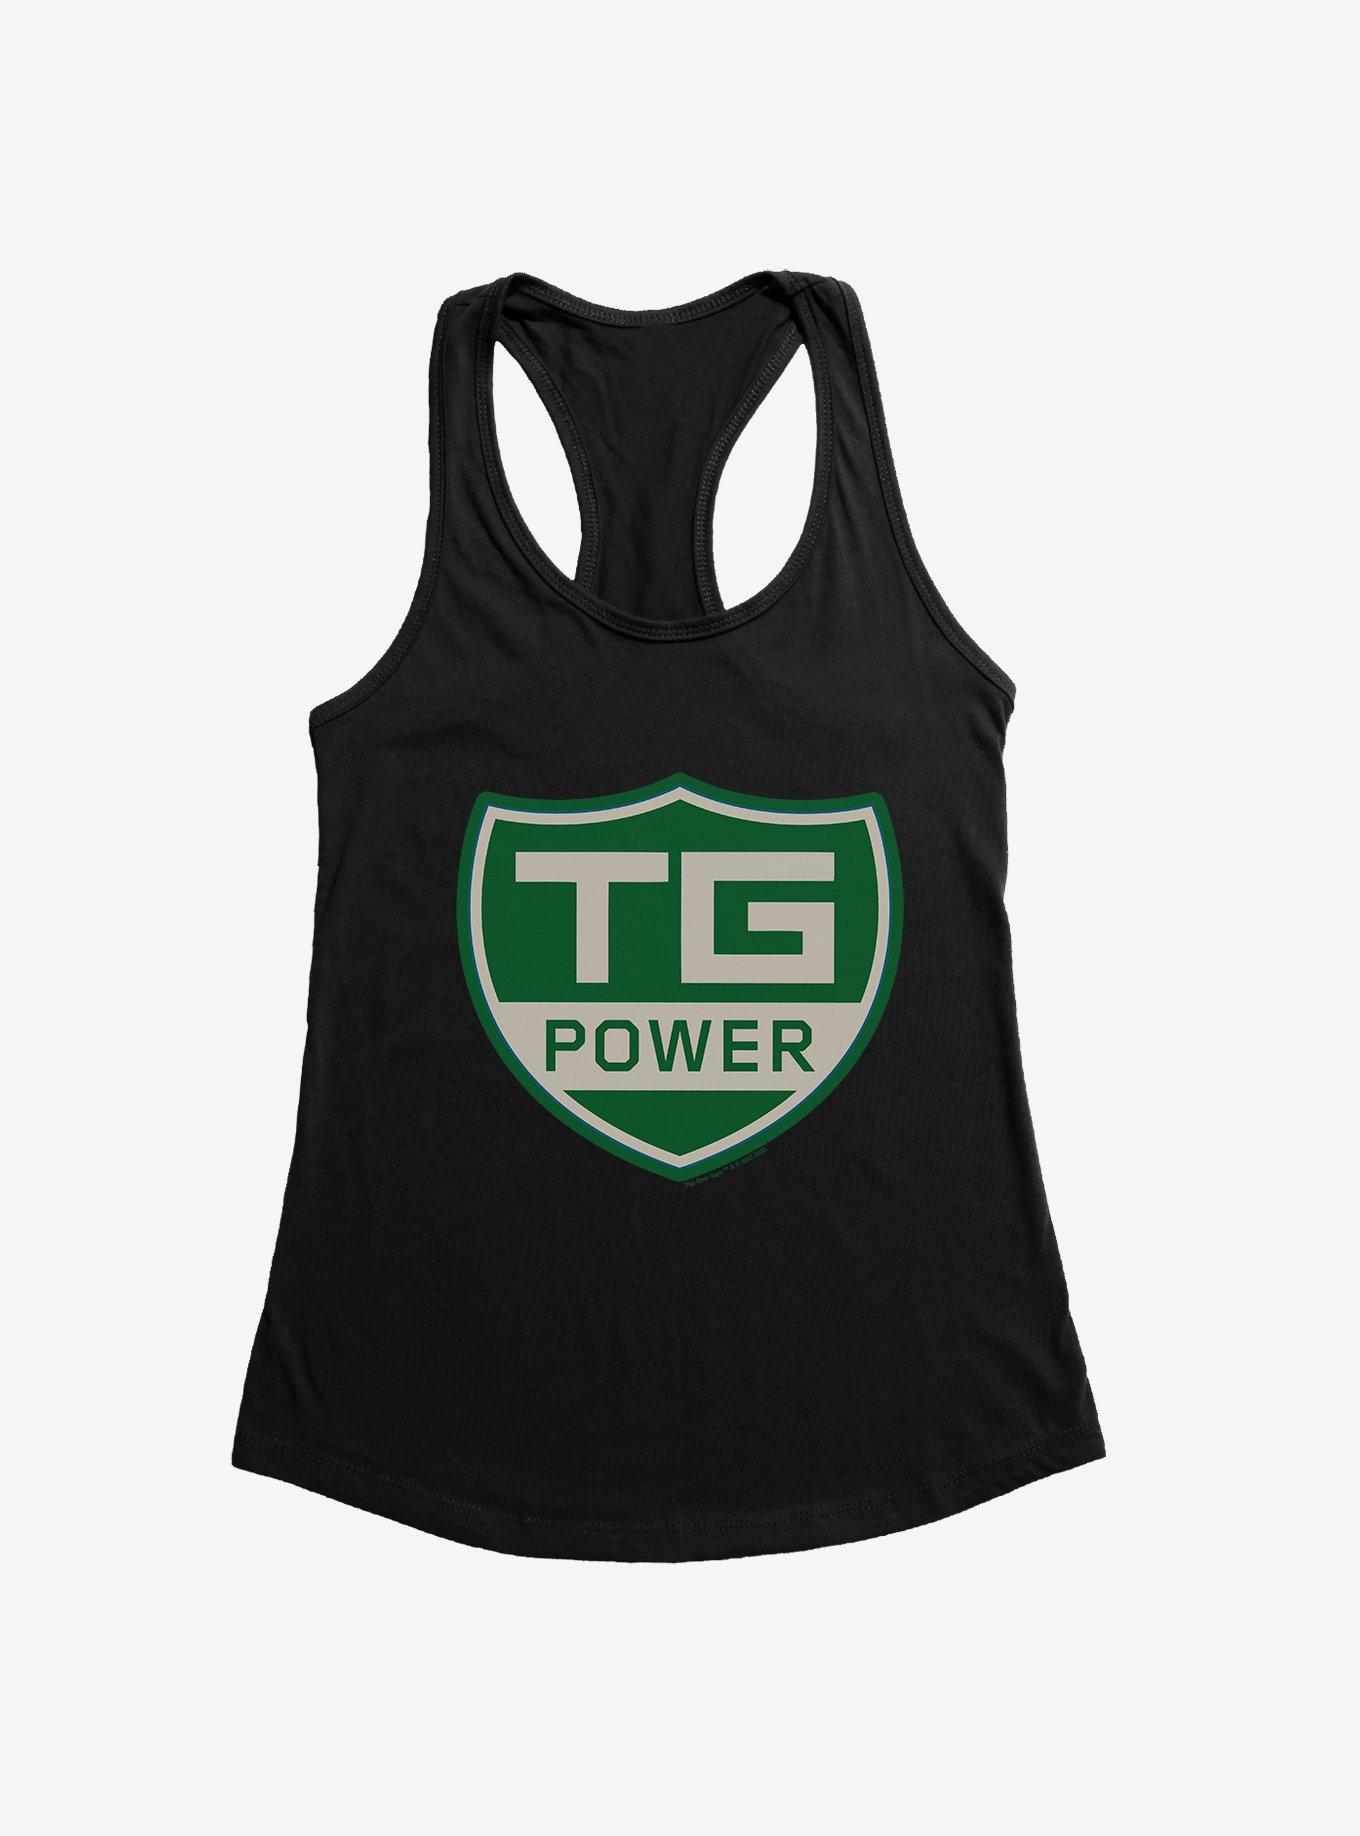 Top Gear TG Power Sign Girls Tank